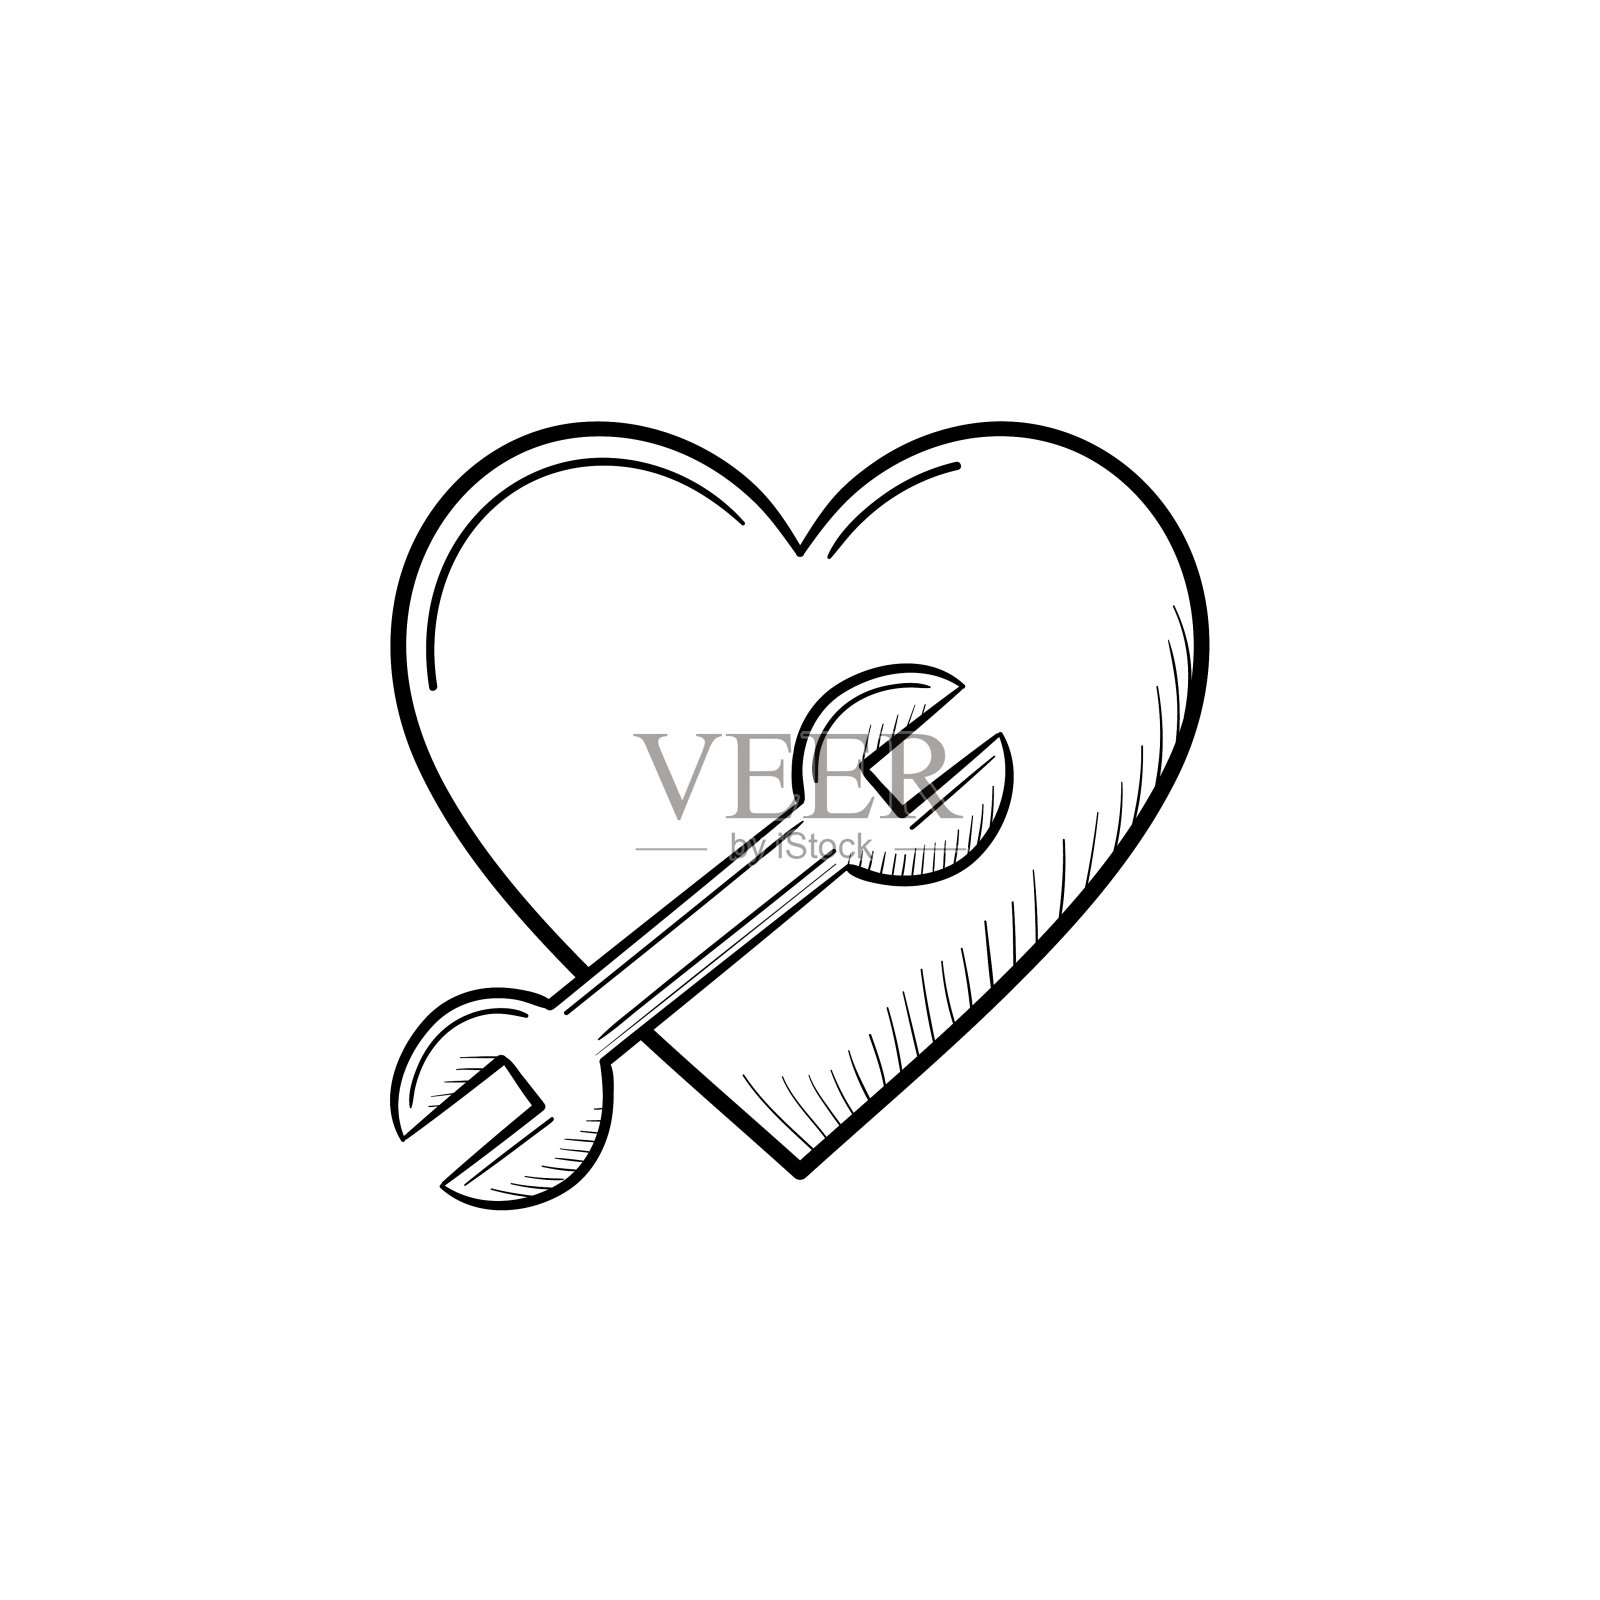 一个心形符号与一个扳手手绘轮廓涂鸦图标插画图片素材